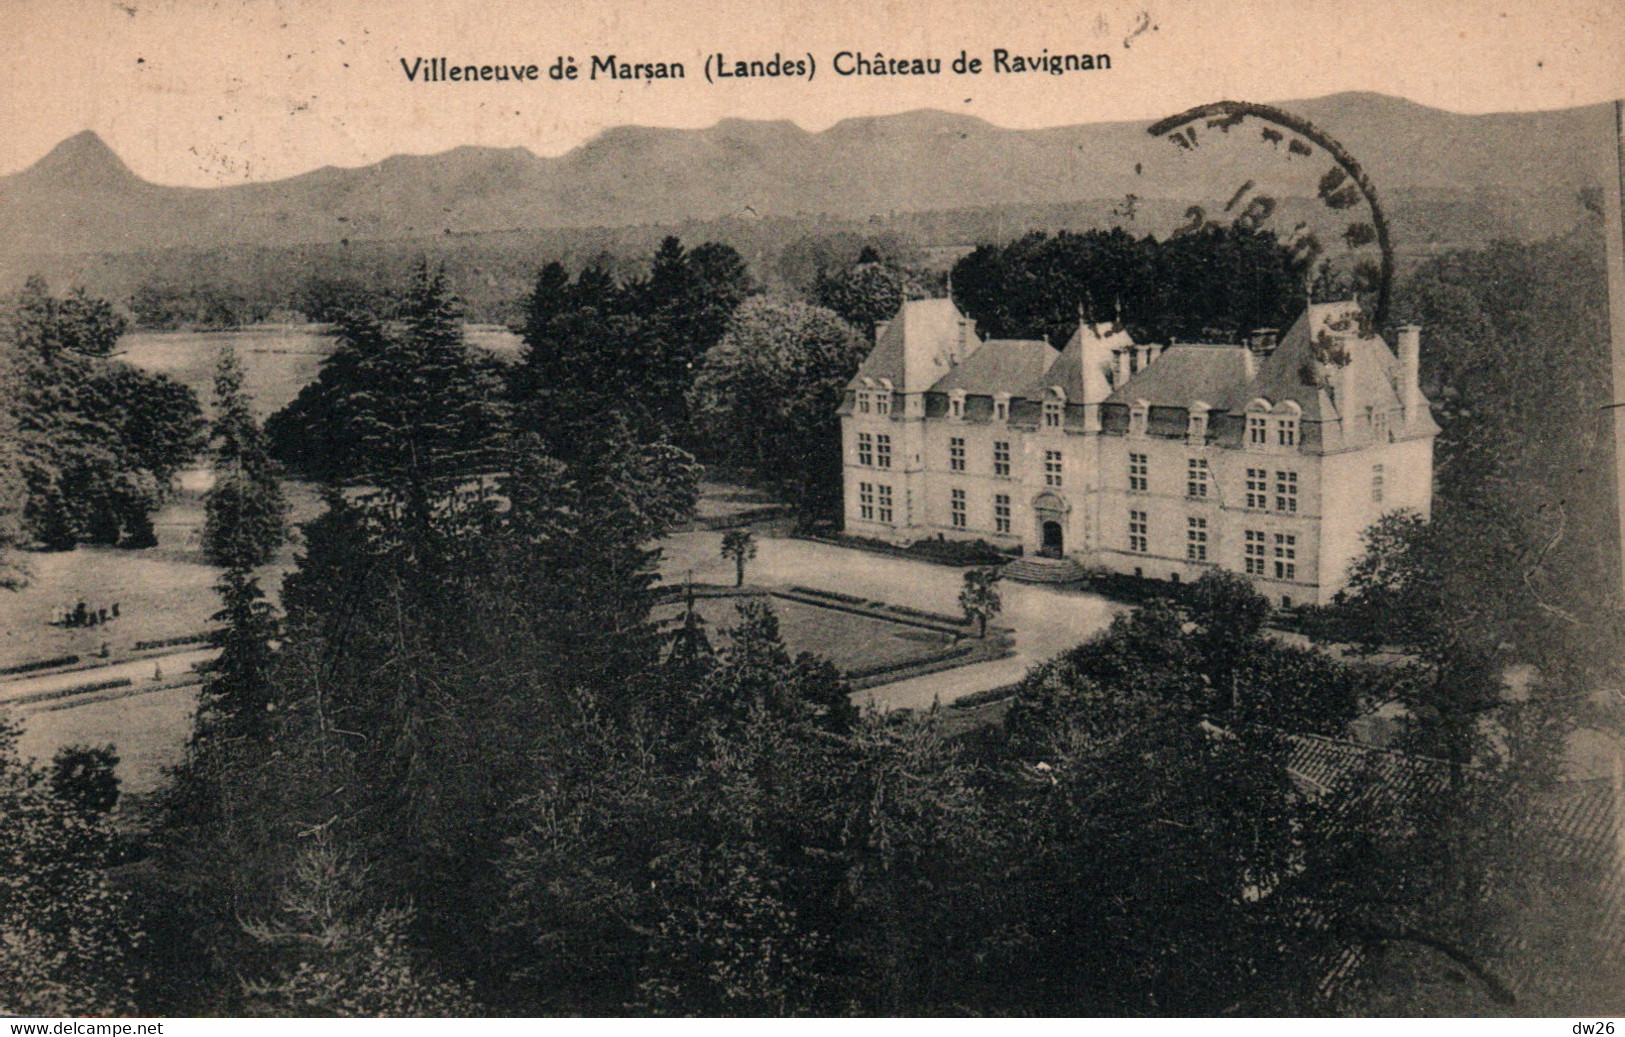 Villeneuve De Marsan (Landes) Château De Ravignan, Vue Aérienne - Edition Papegnin - Carte De 1926 - Villeneuve De Marsan